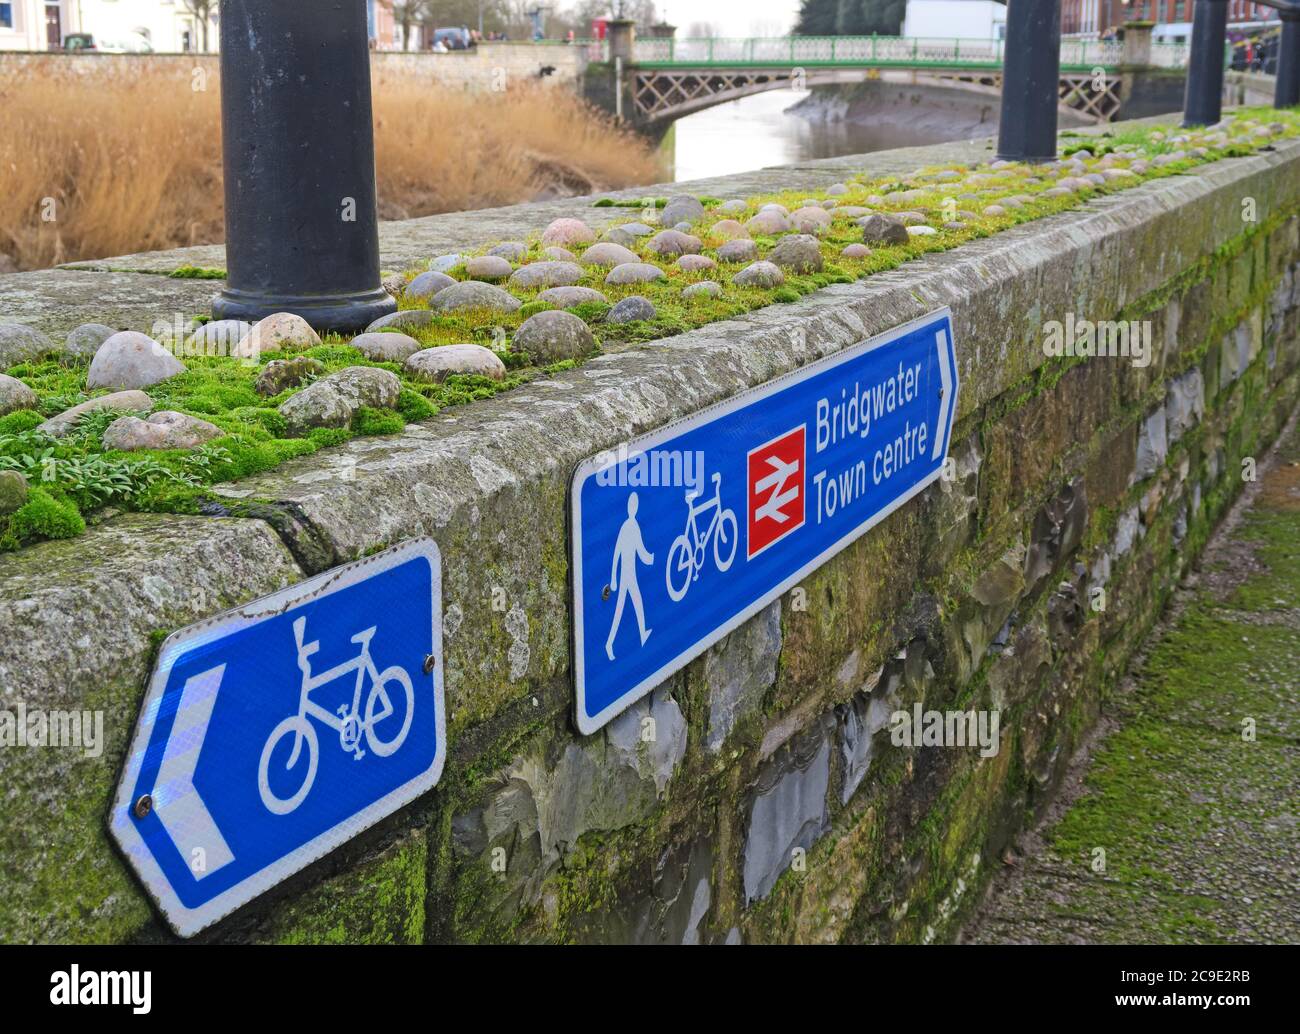 Signalisation à vélo, centre-ville de Bridgwater, gare ferroviaire, itinéraire de marche, Bridgwater, Somerset, Angleterre, Royaume-Uni Banque D'Images